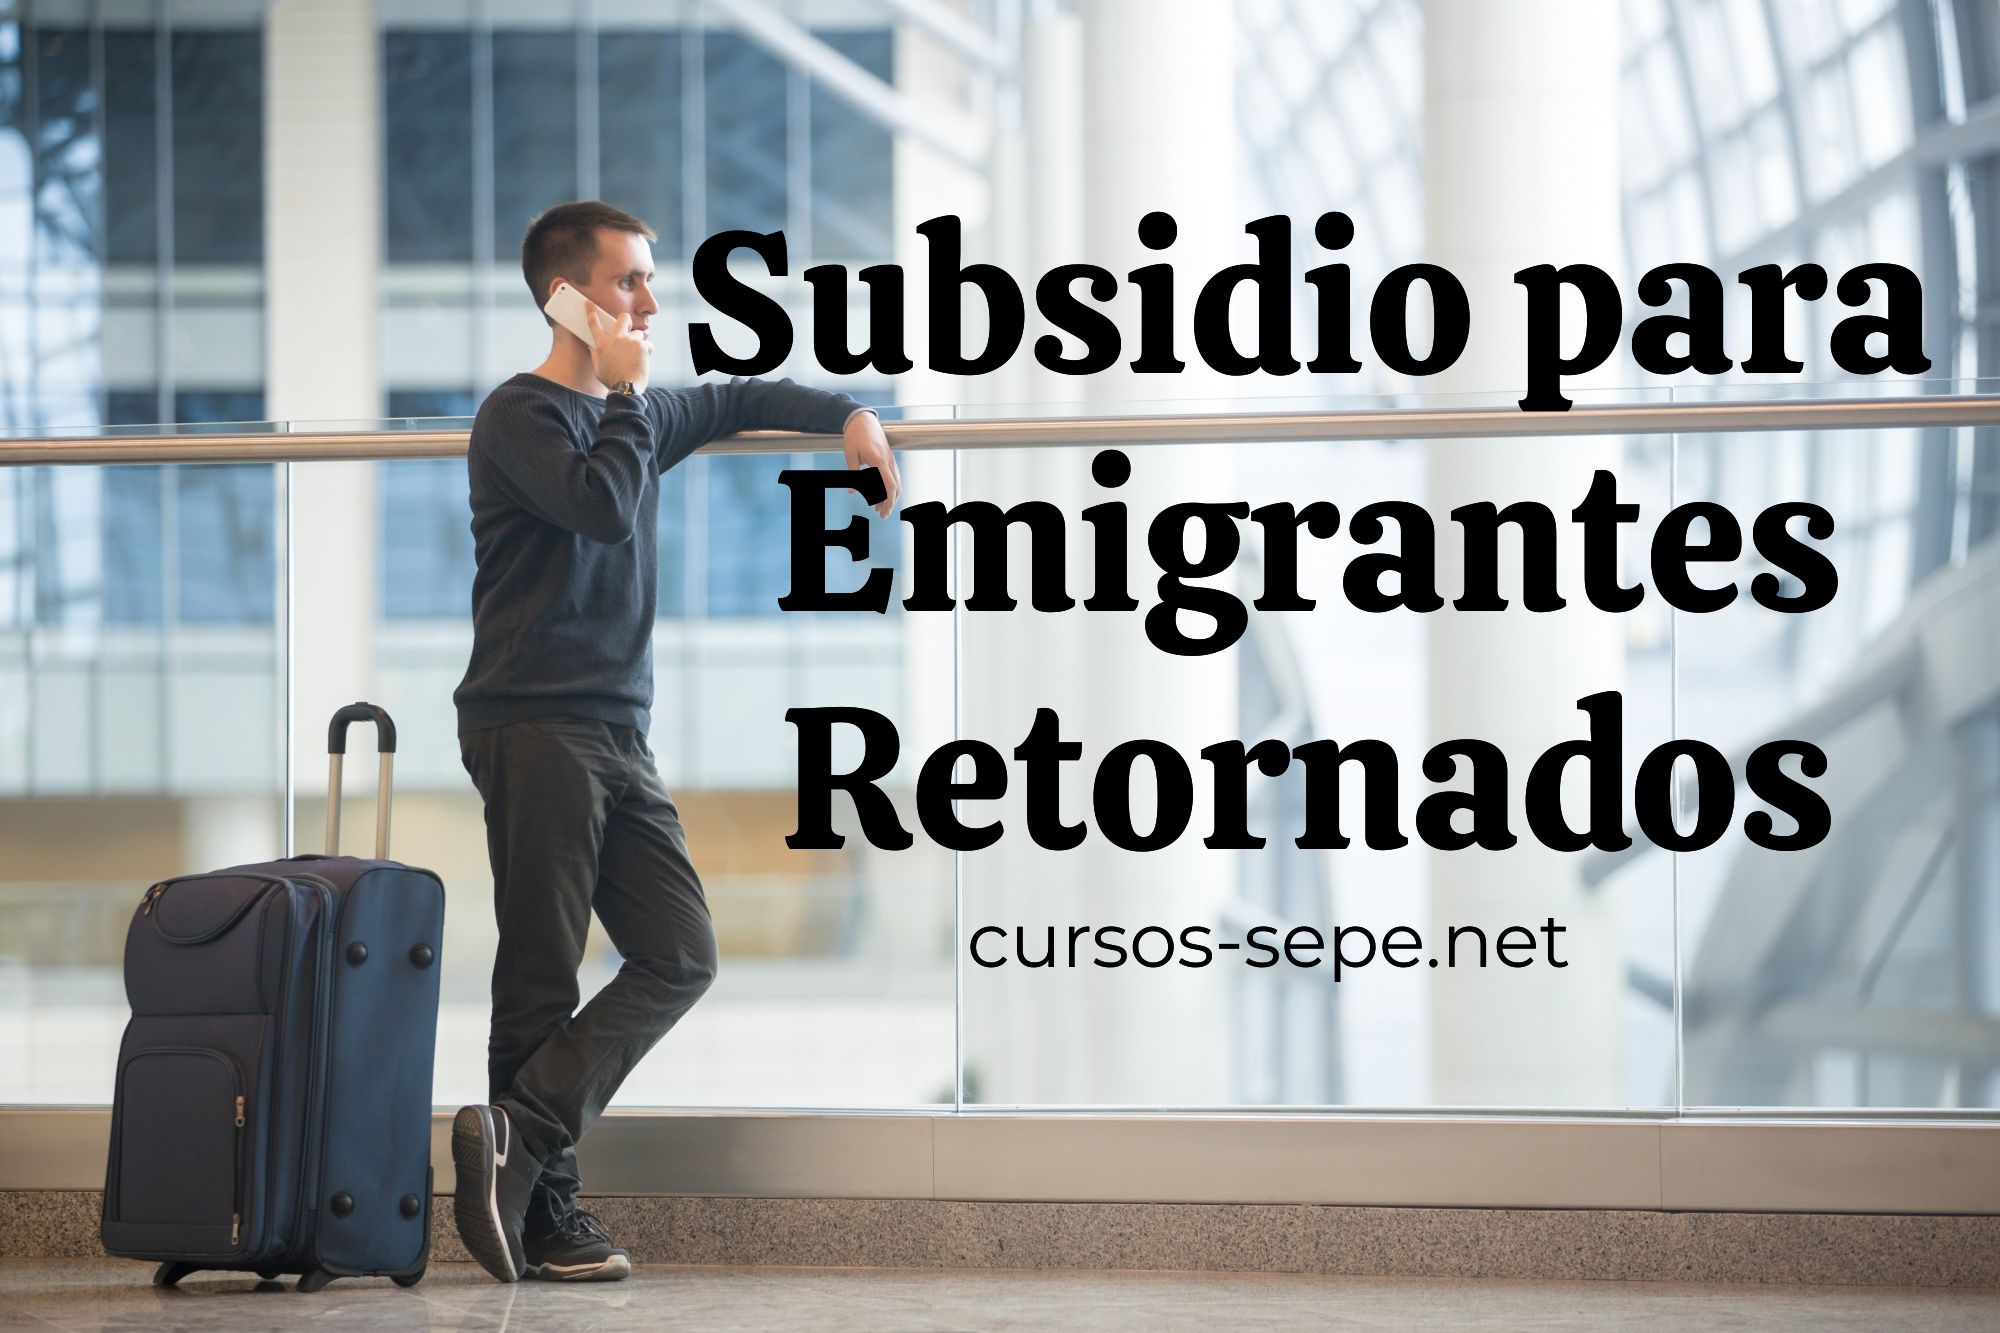 Solicitud y requisitos exigidos para percibir el Subsidio para Emigrantes Retornados en España.